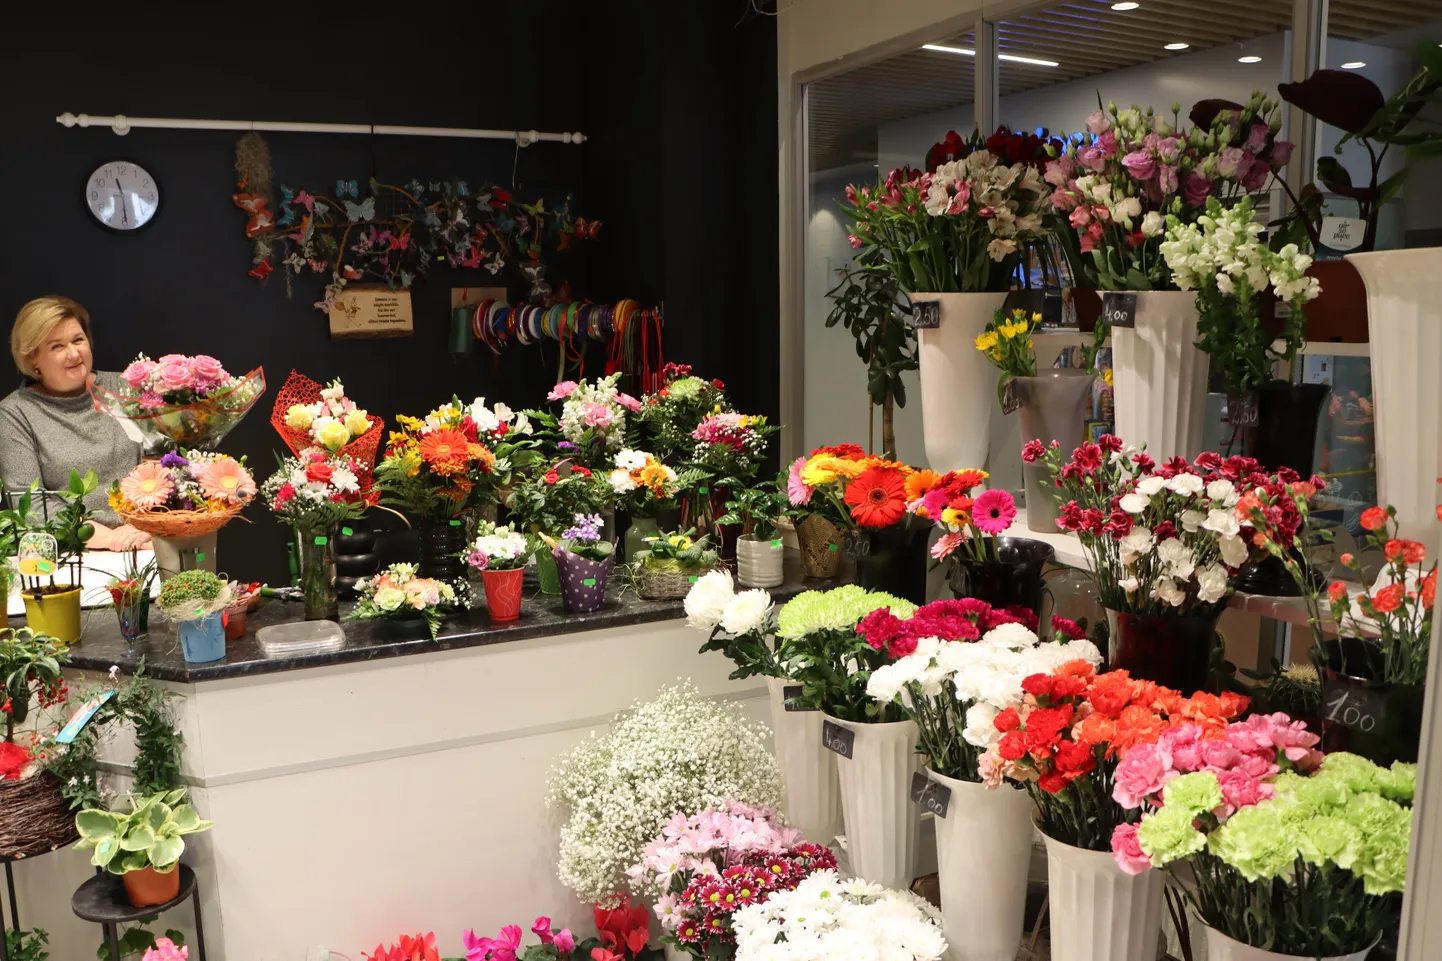 В цветочных магазинах обилие красивых цветов, но в праздничные дни ставки на традиционные тюльпаны и нарциссы здесь не делают, потому что в сетевых магазинах такие цветы дешевле.